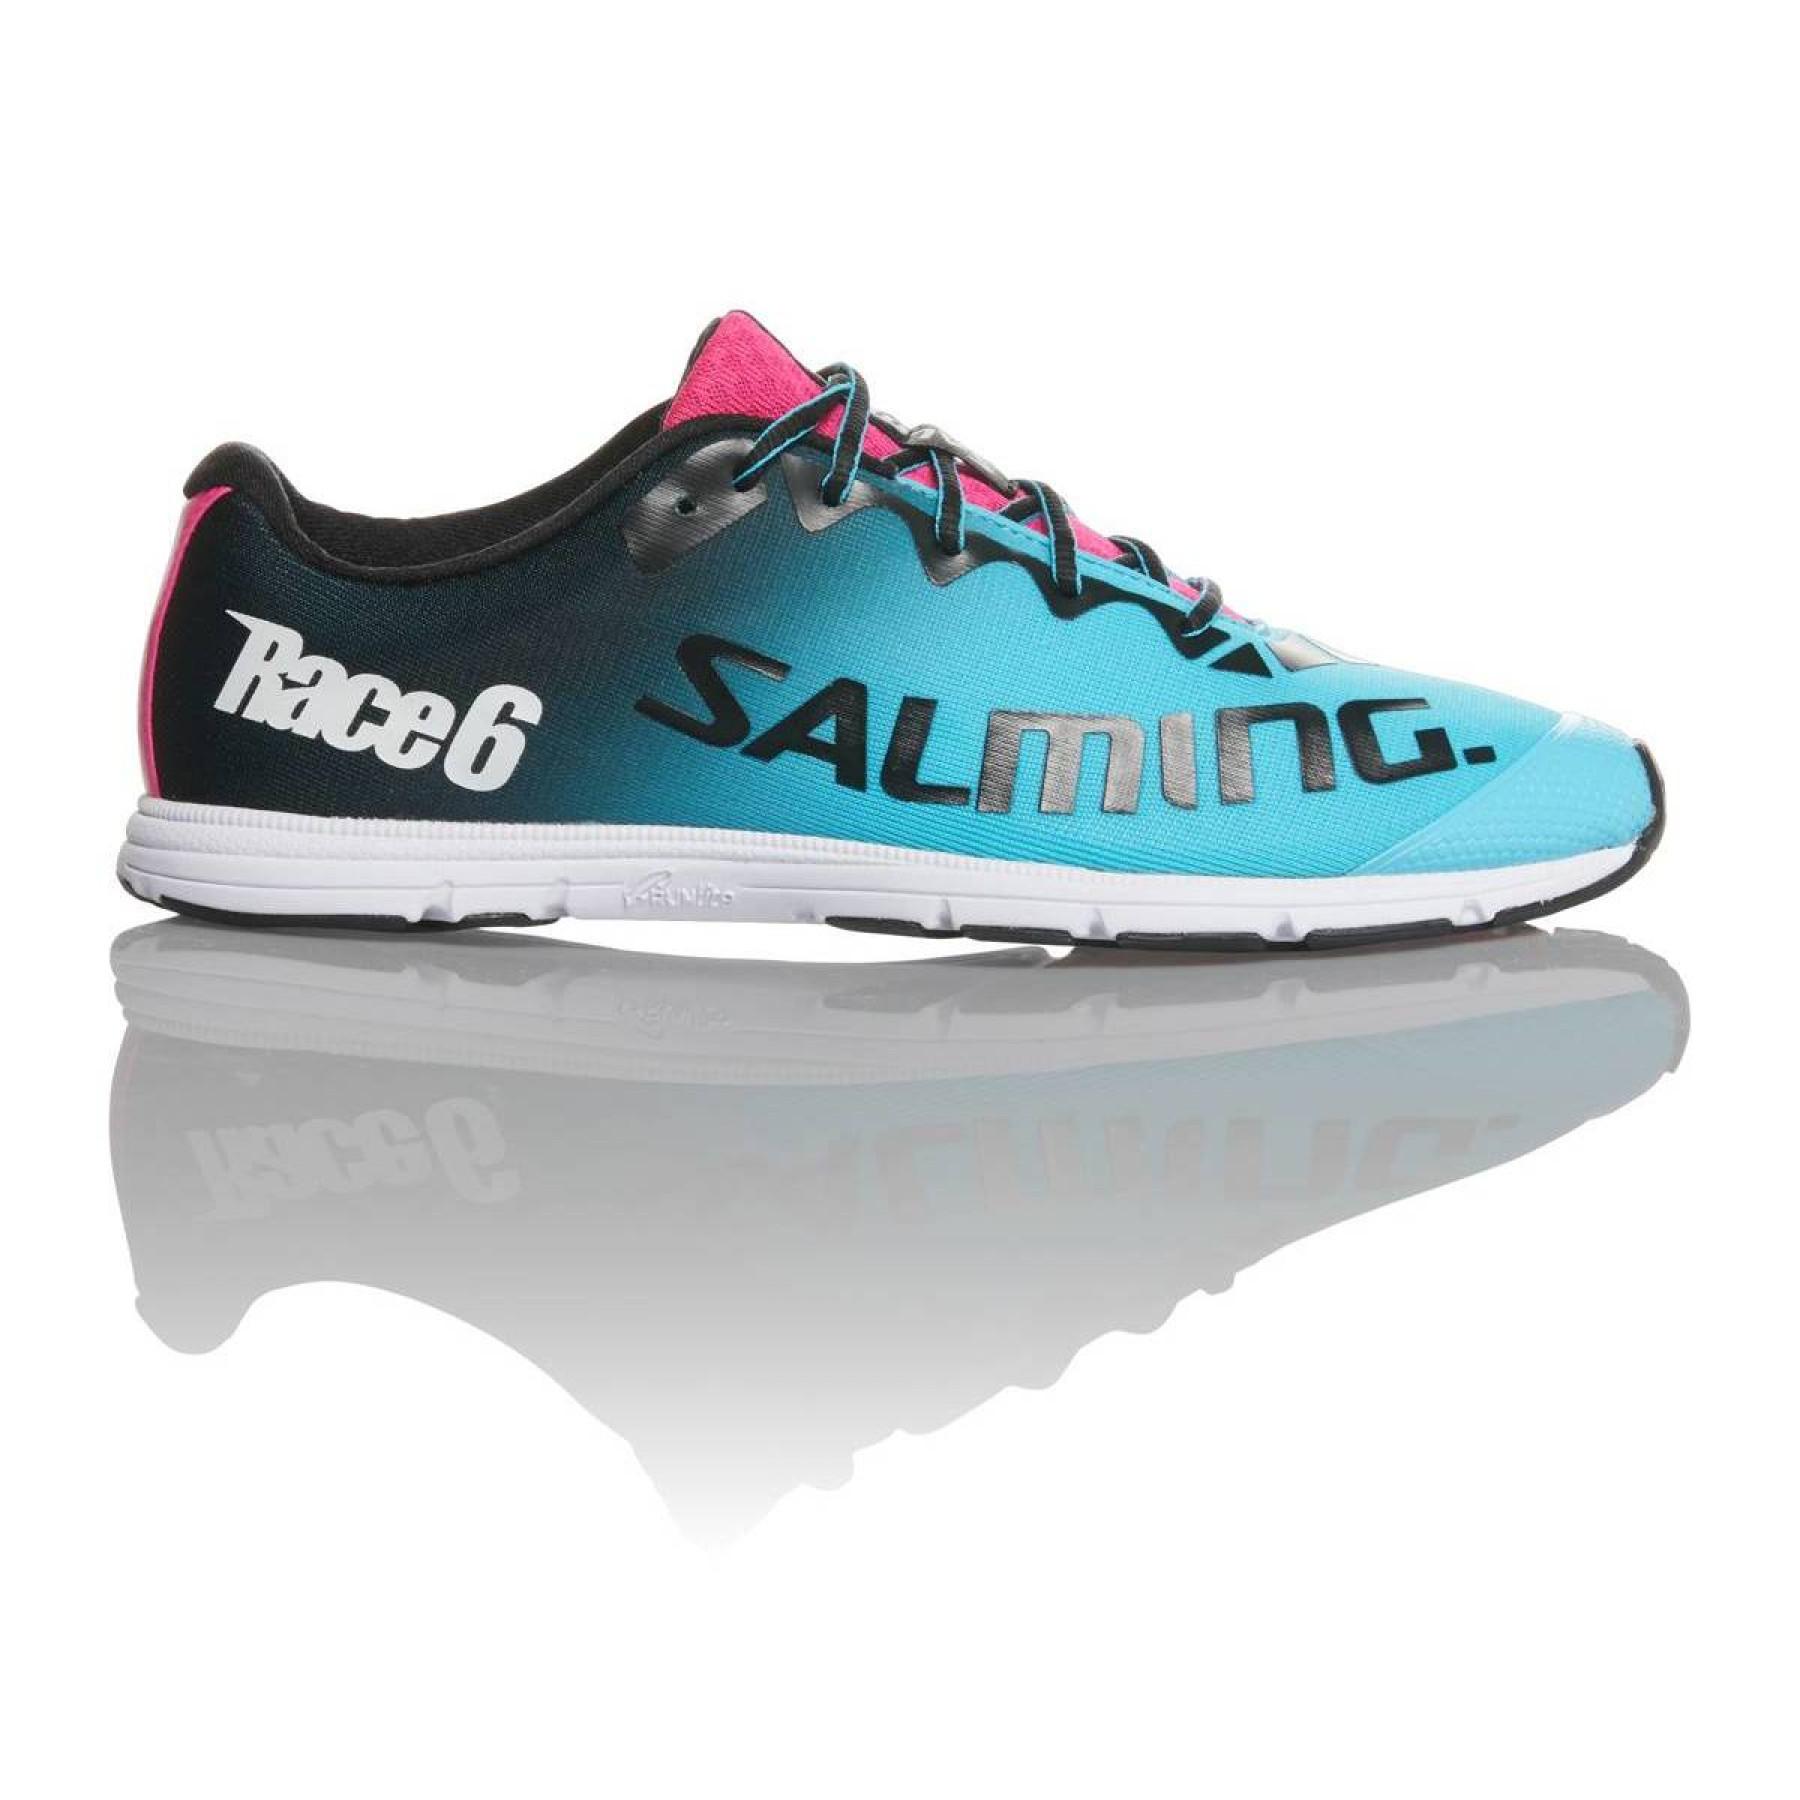 Chaussures de running femme Salming race6